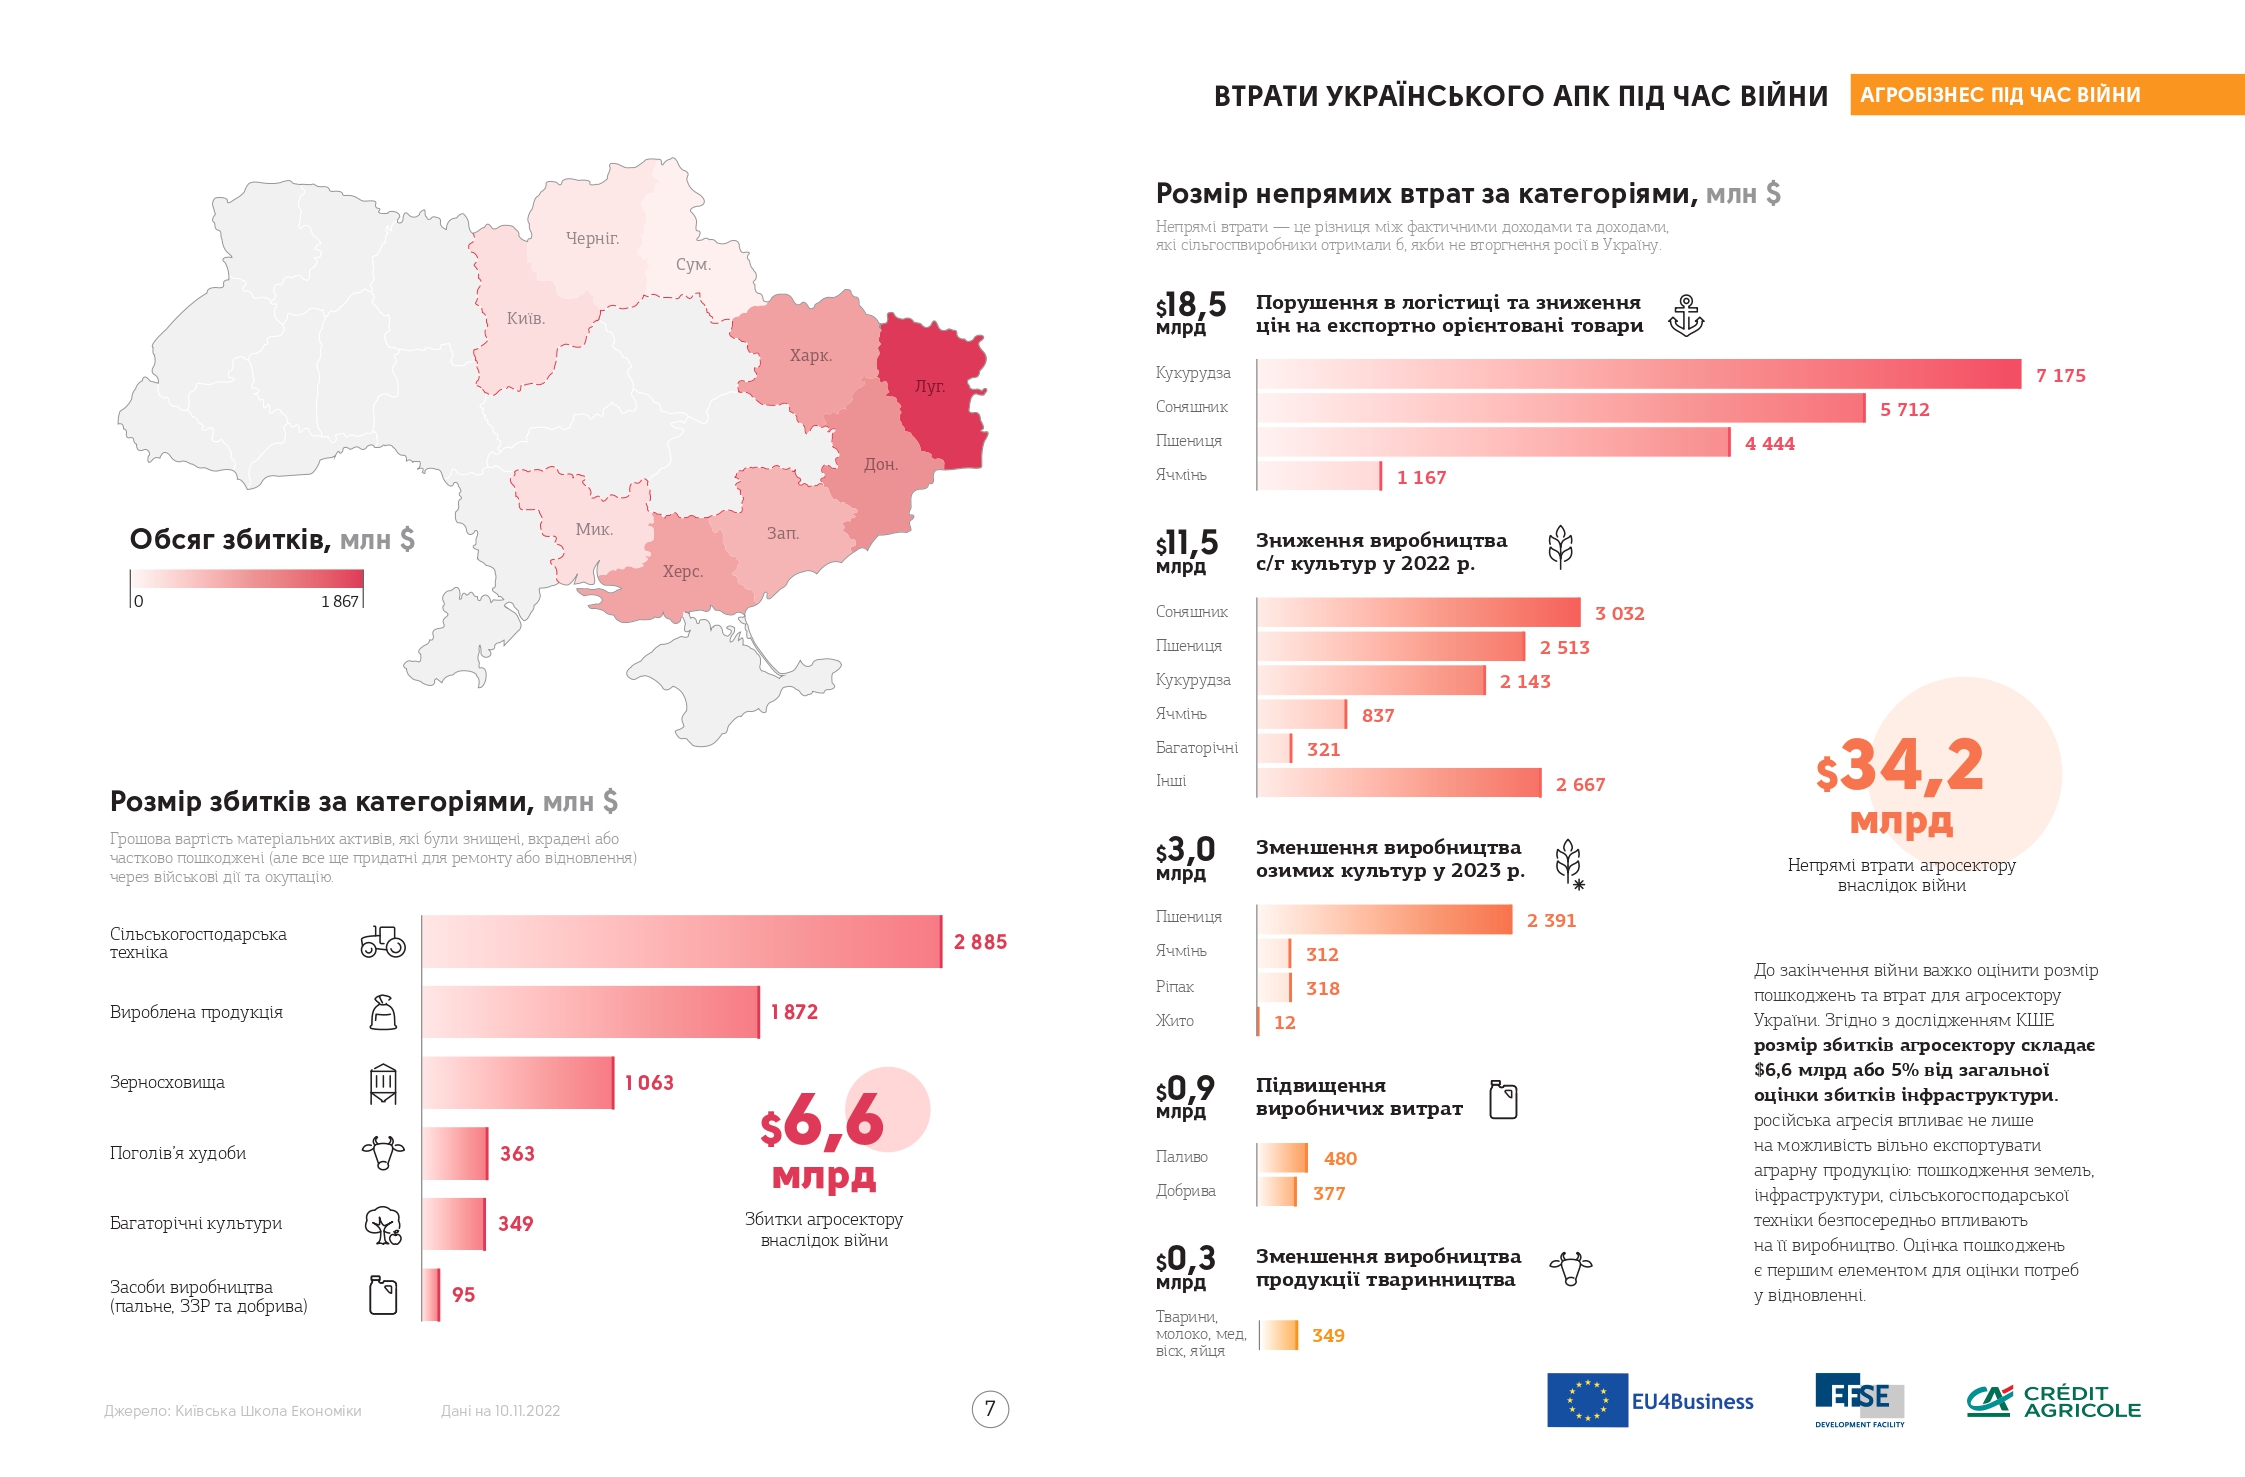 Джерело: Інфографічний довідник «Агробізнес України під час війни» за 2021-2022 роки